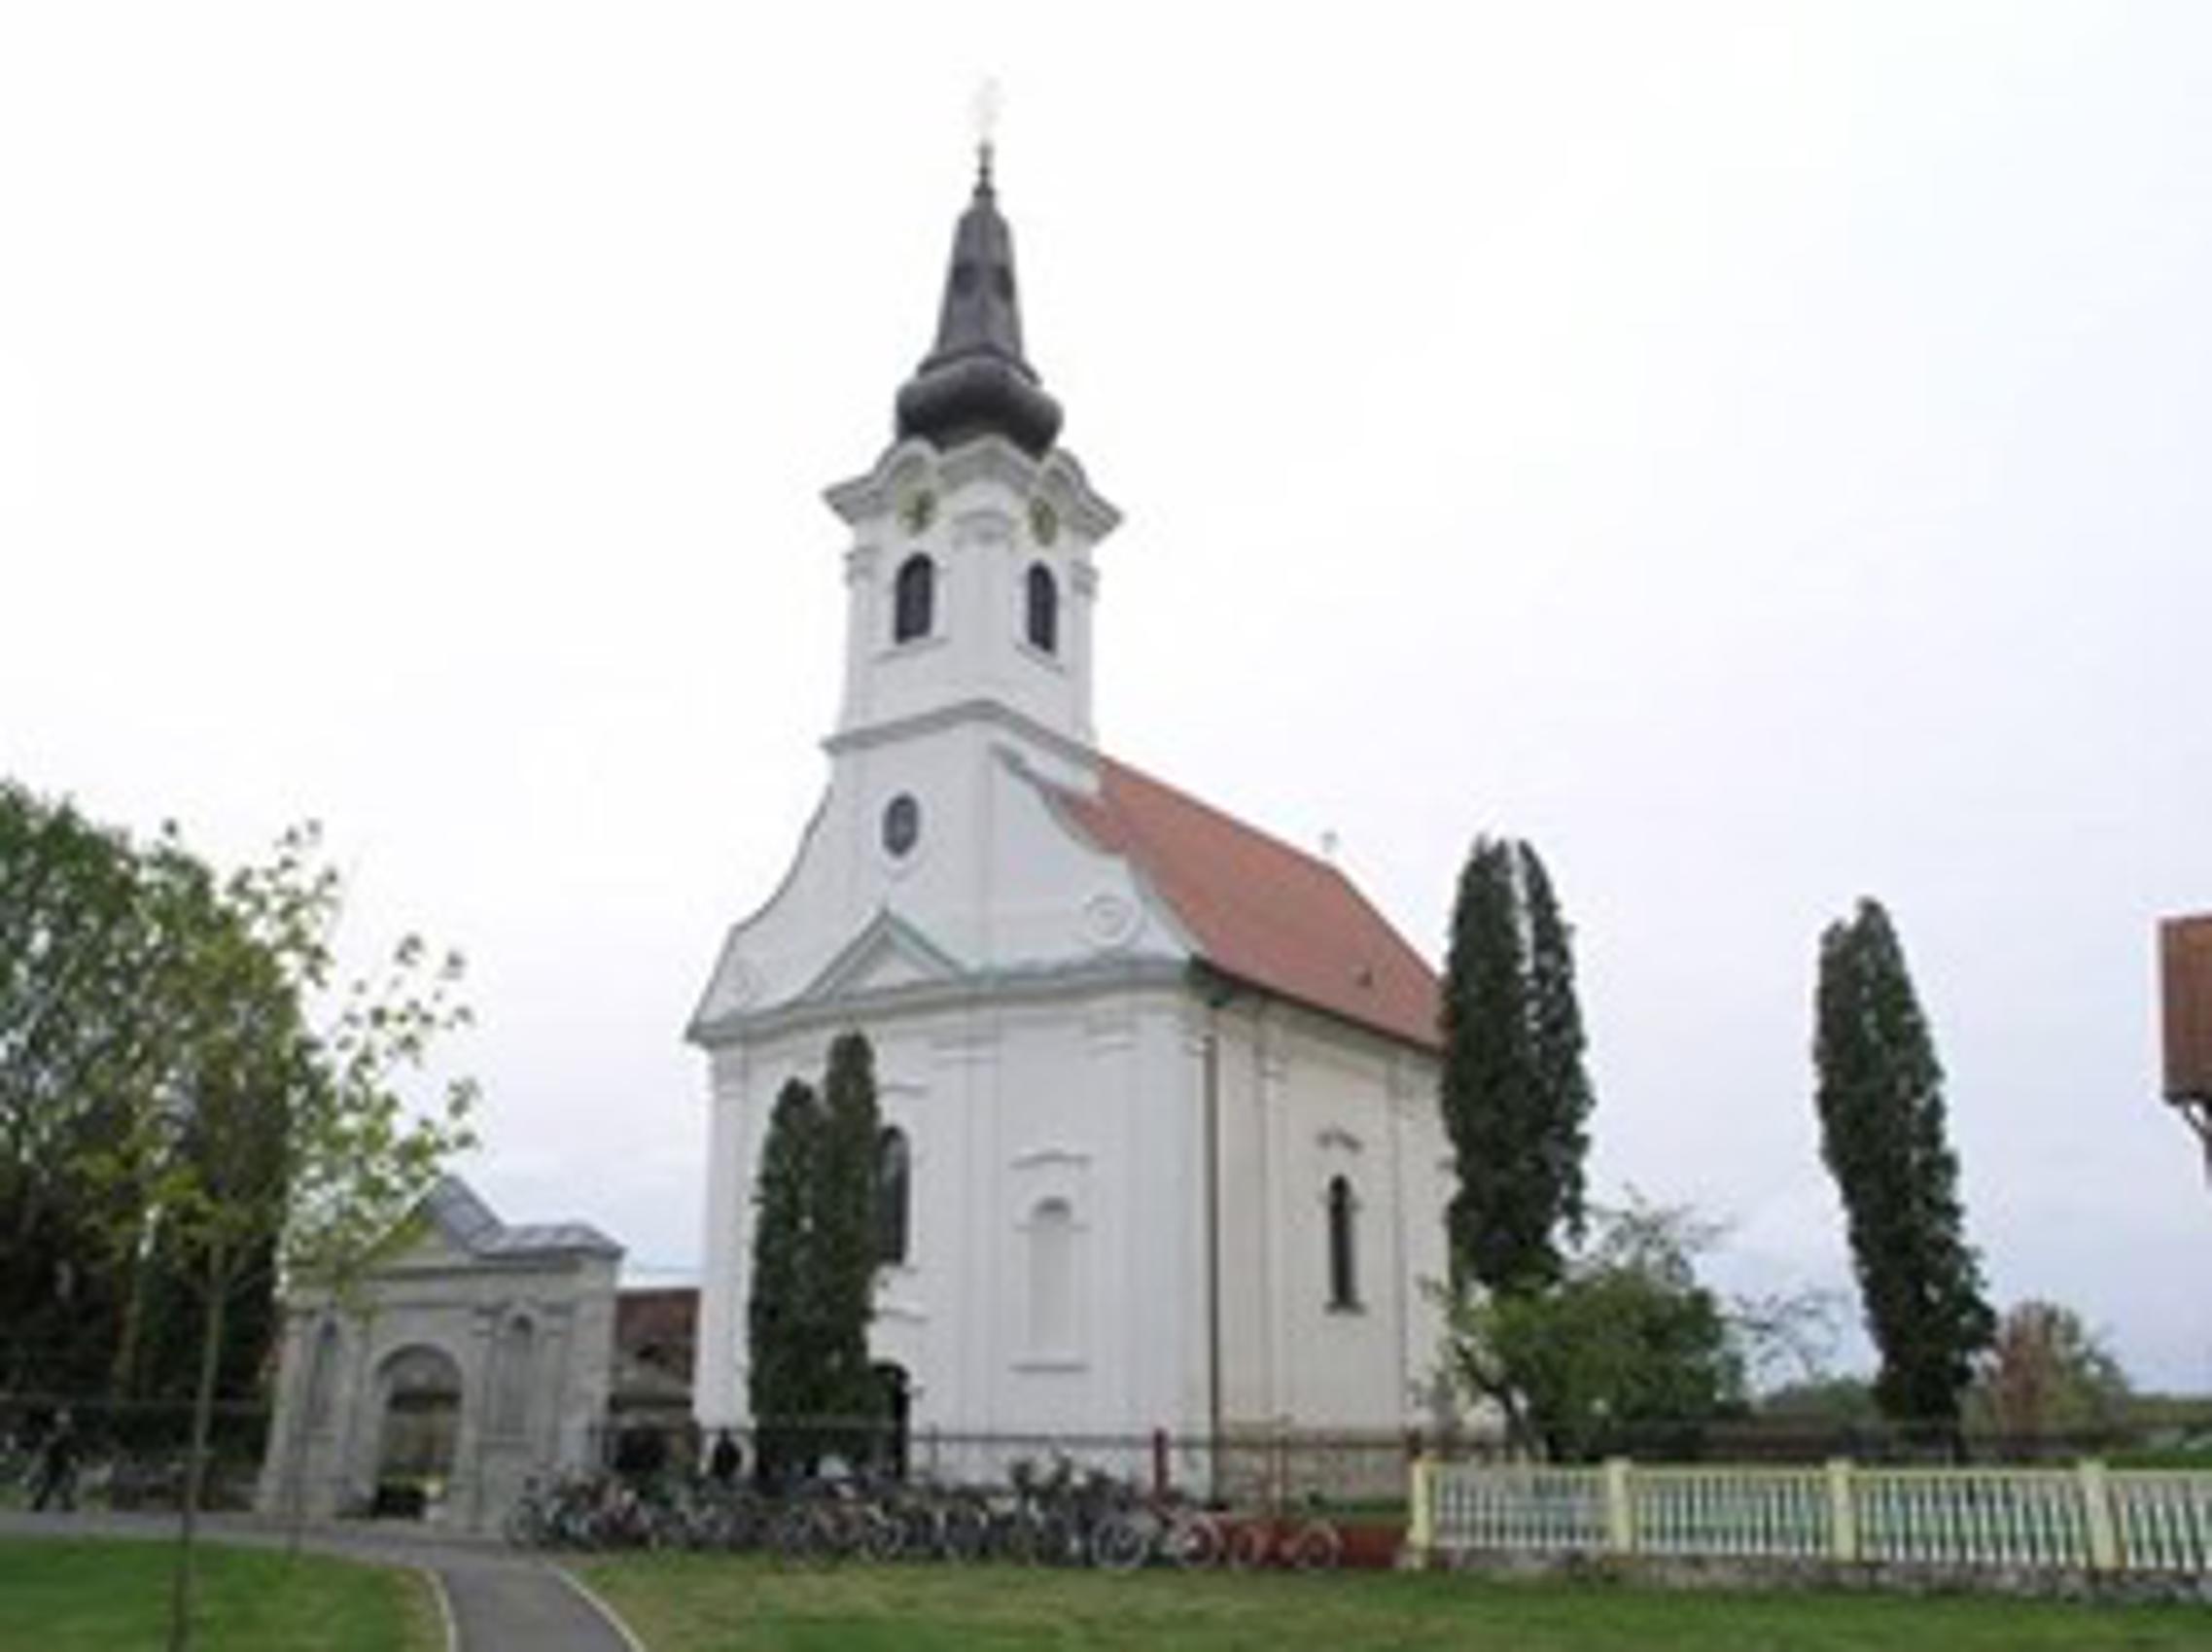 Crkva u Starom Petrovom Selu